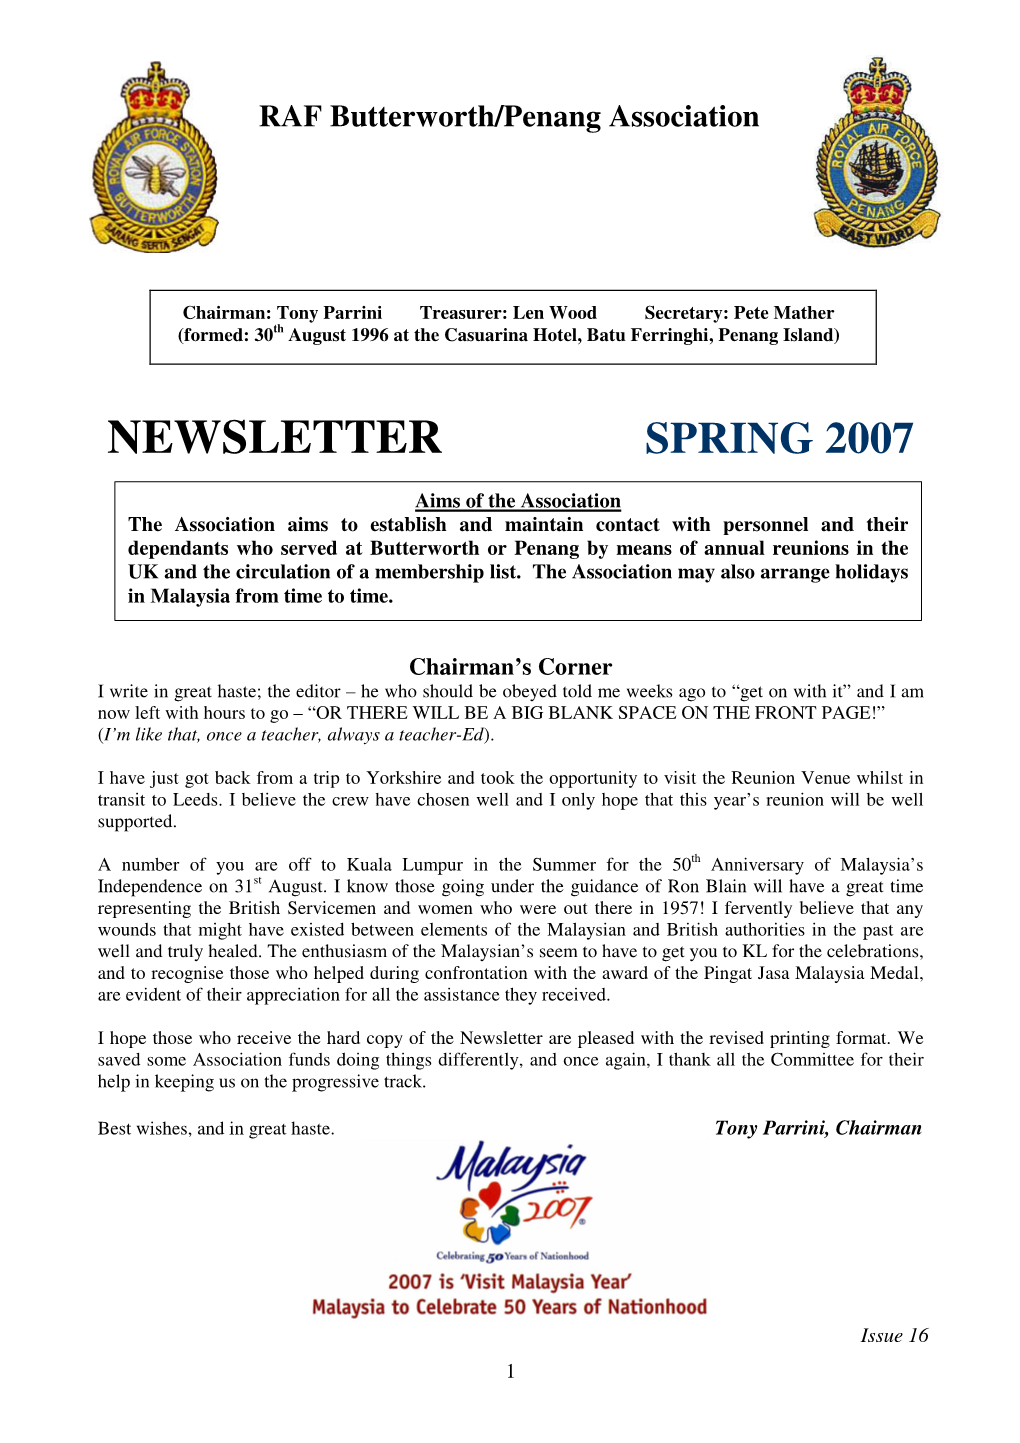 Newsletter Spring 2007